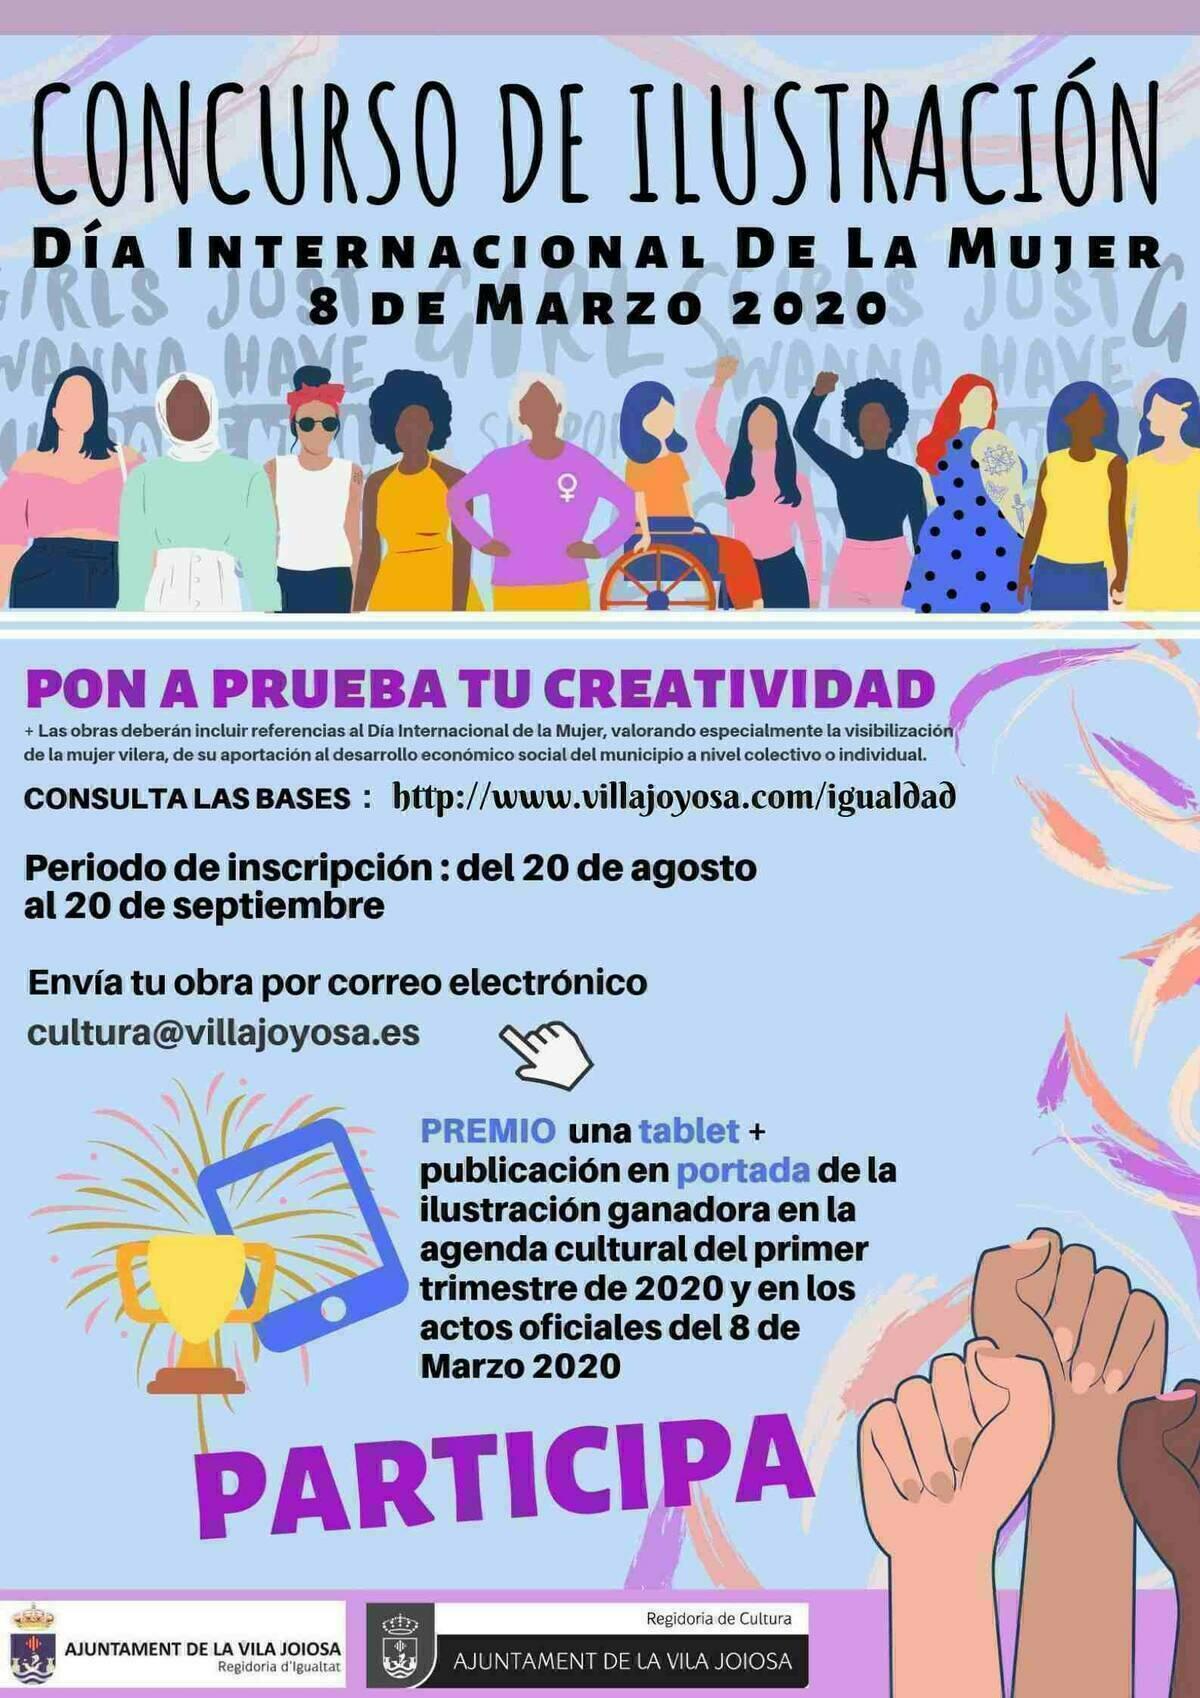 La Vila Joiosa organiza un concurso de ilustración sobre el Día Internacional de la Mujer – 8 de Marzo